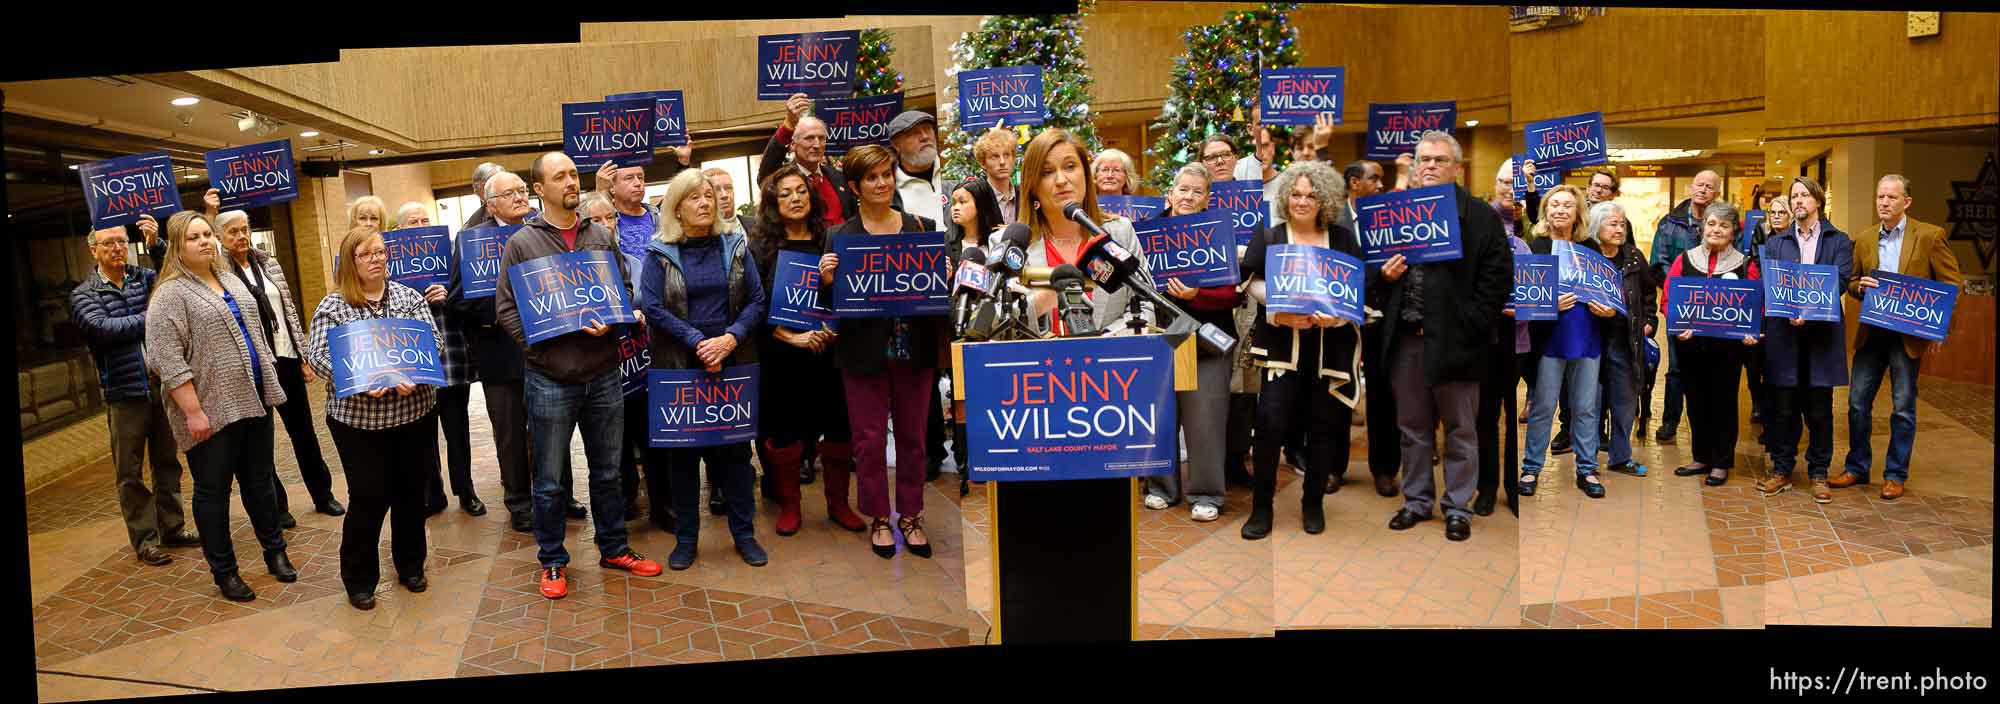 Jenny Wilson for County Mayor